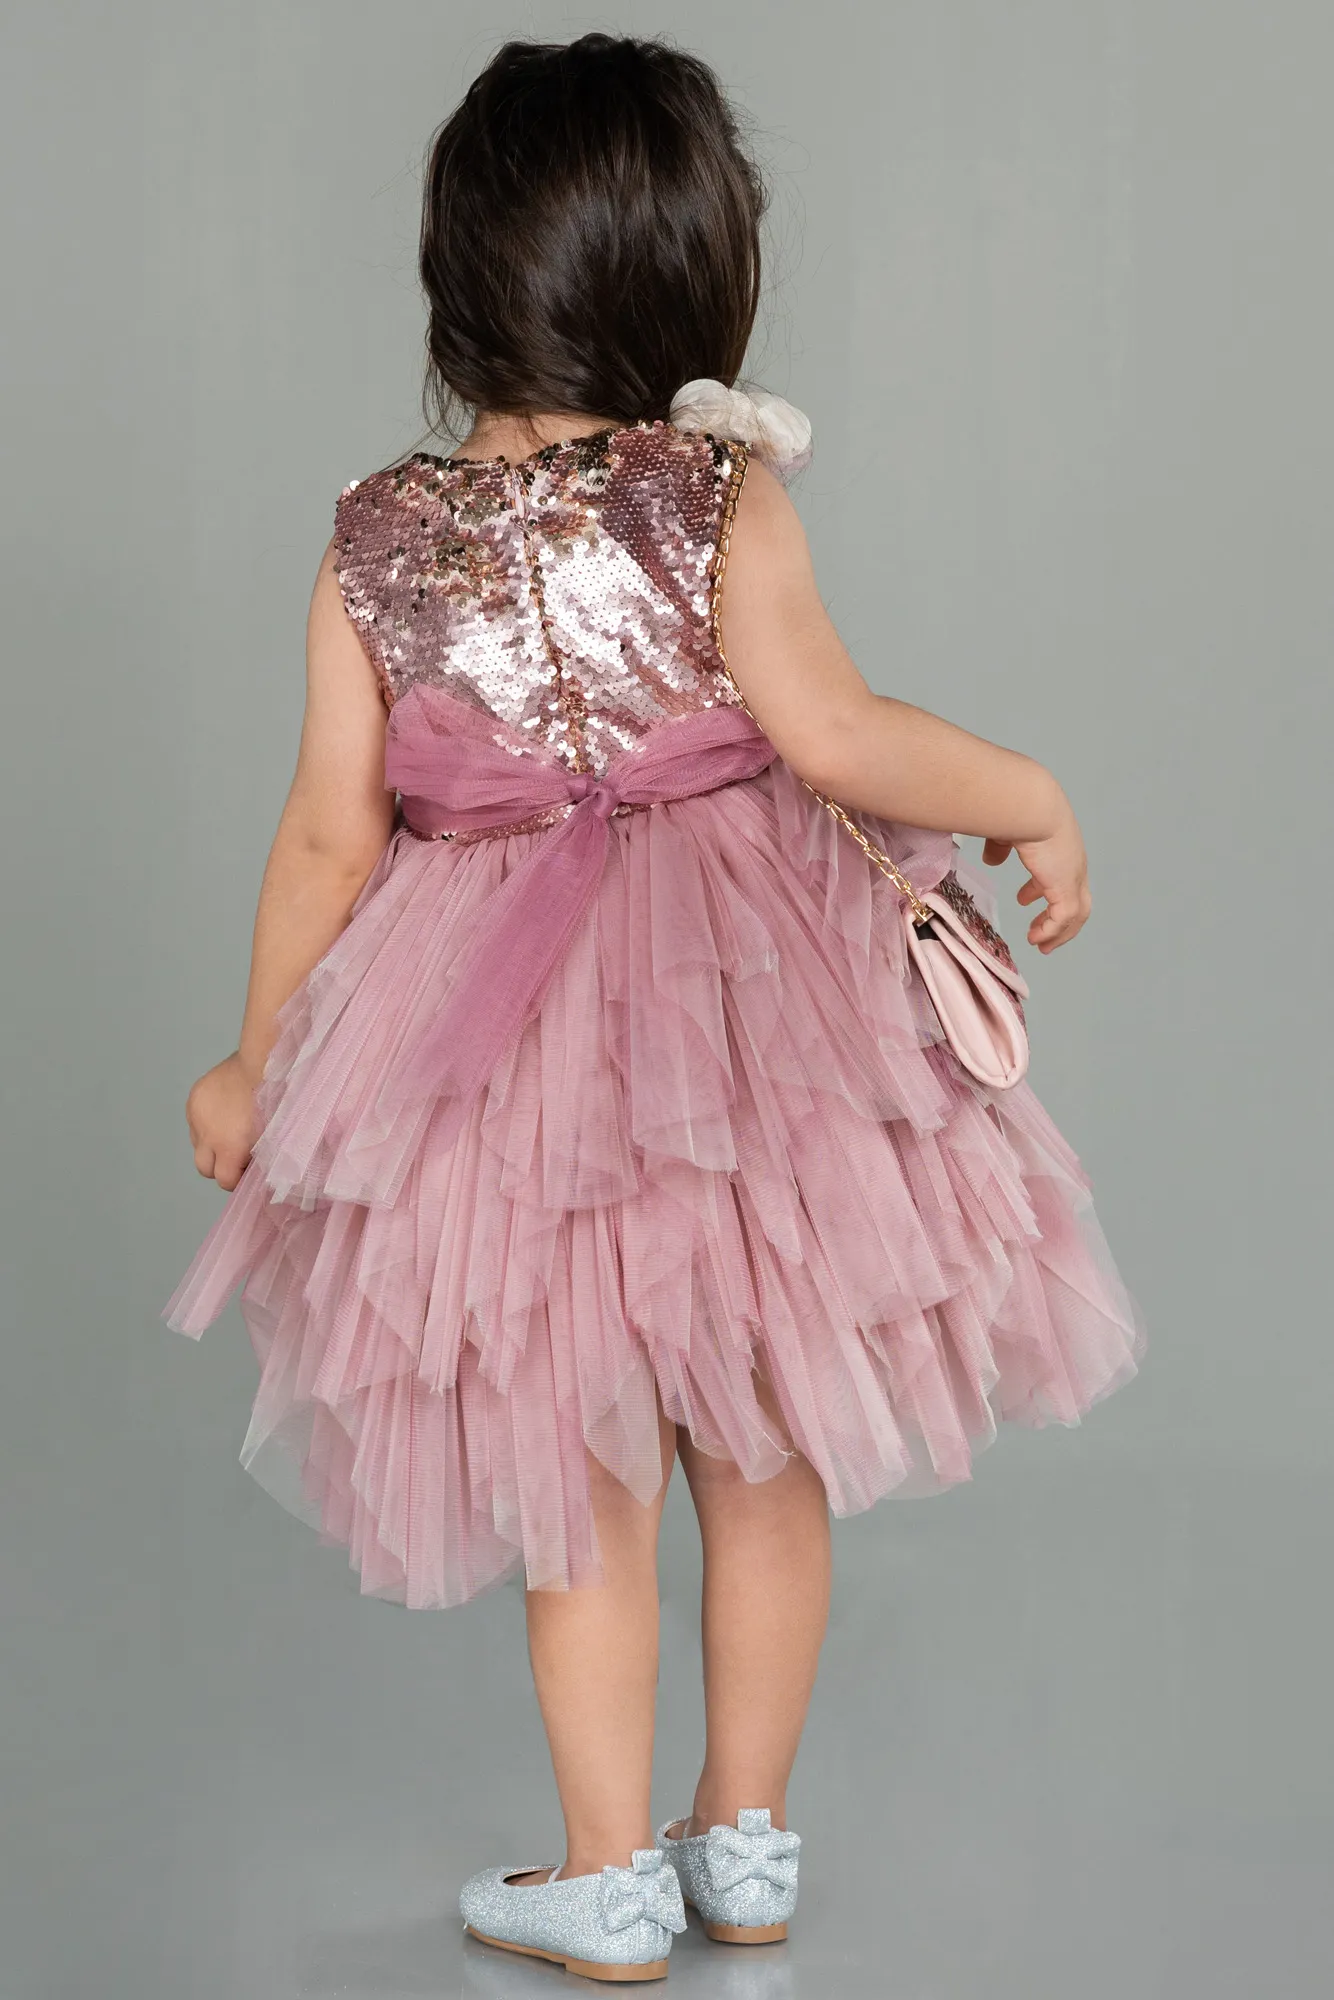 Rose Colored-Short Girl Dress ABK1485